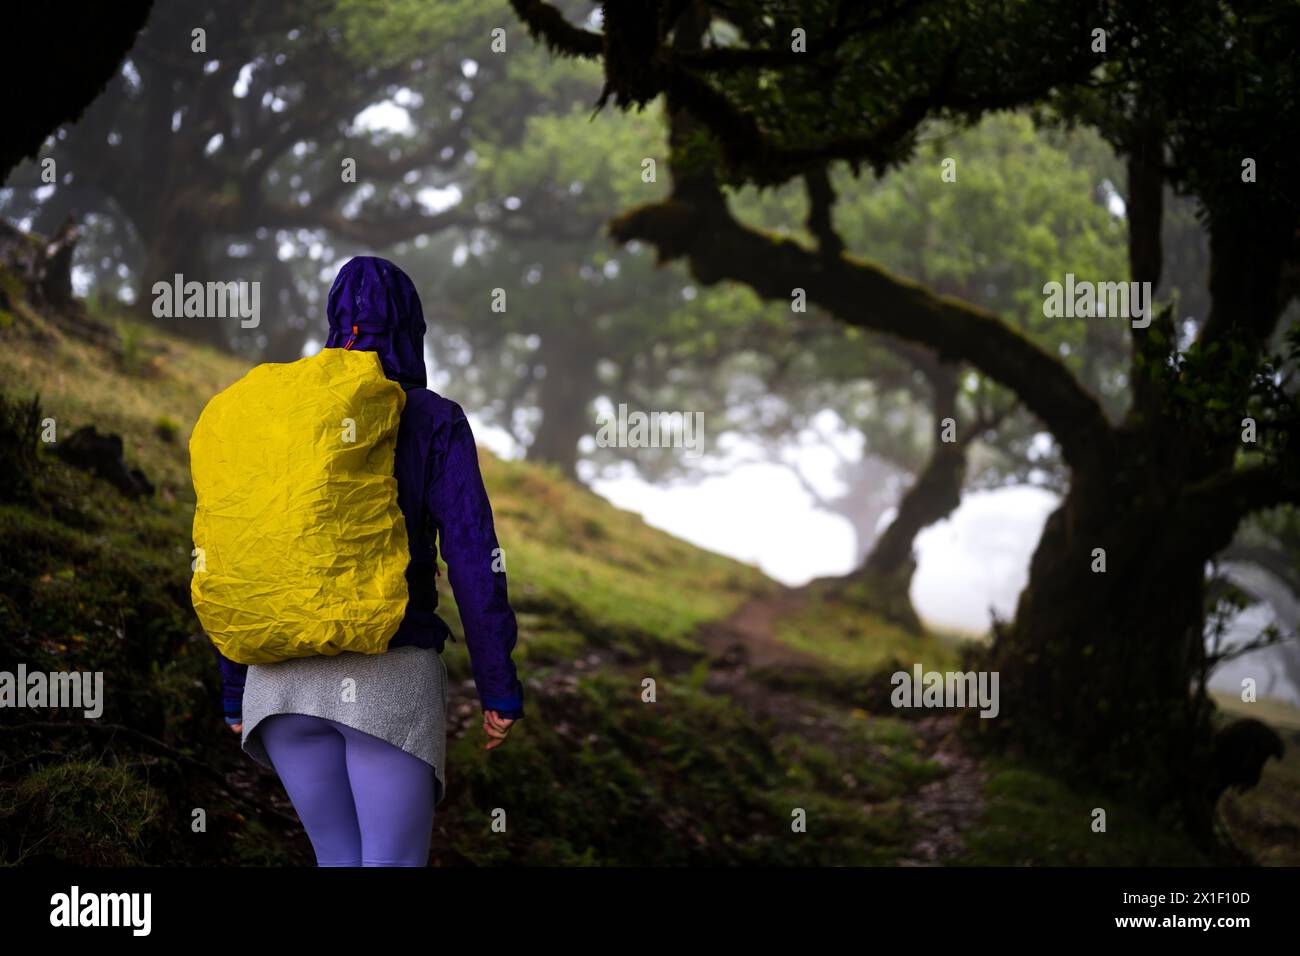 Beschreibung: Rückansicht eines Rucksacktouristen in regenfester Kleidung, der auf einem Wanderweg in einem mystischen Nebelwald mit riesigen Lorbeerbäumen spaziert. Fanal Forest, M Stockfoto